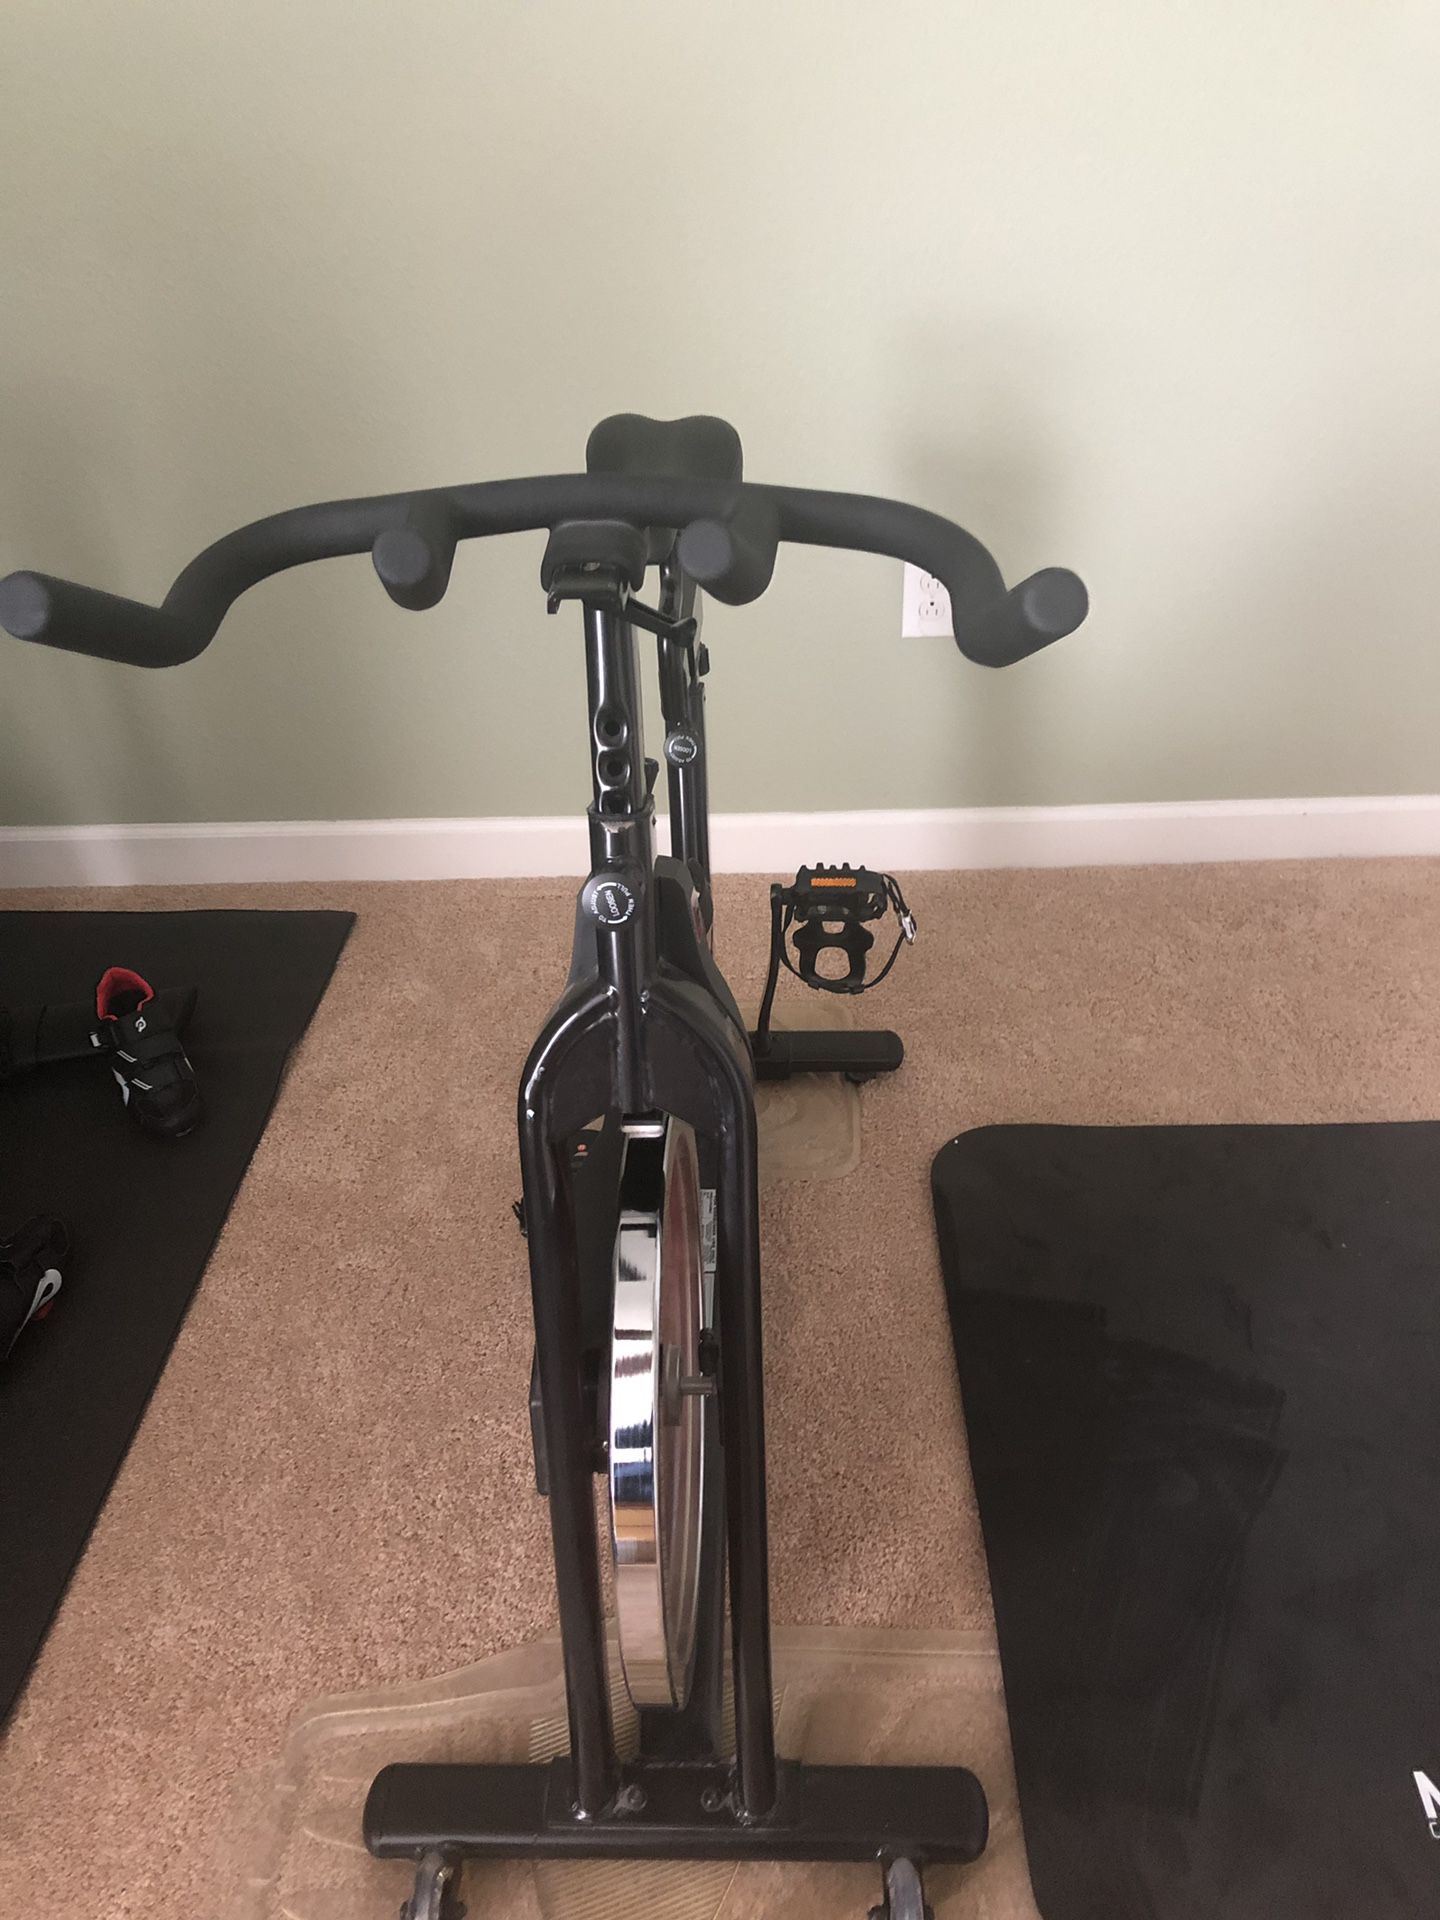 Workout bike